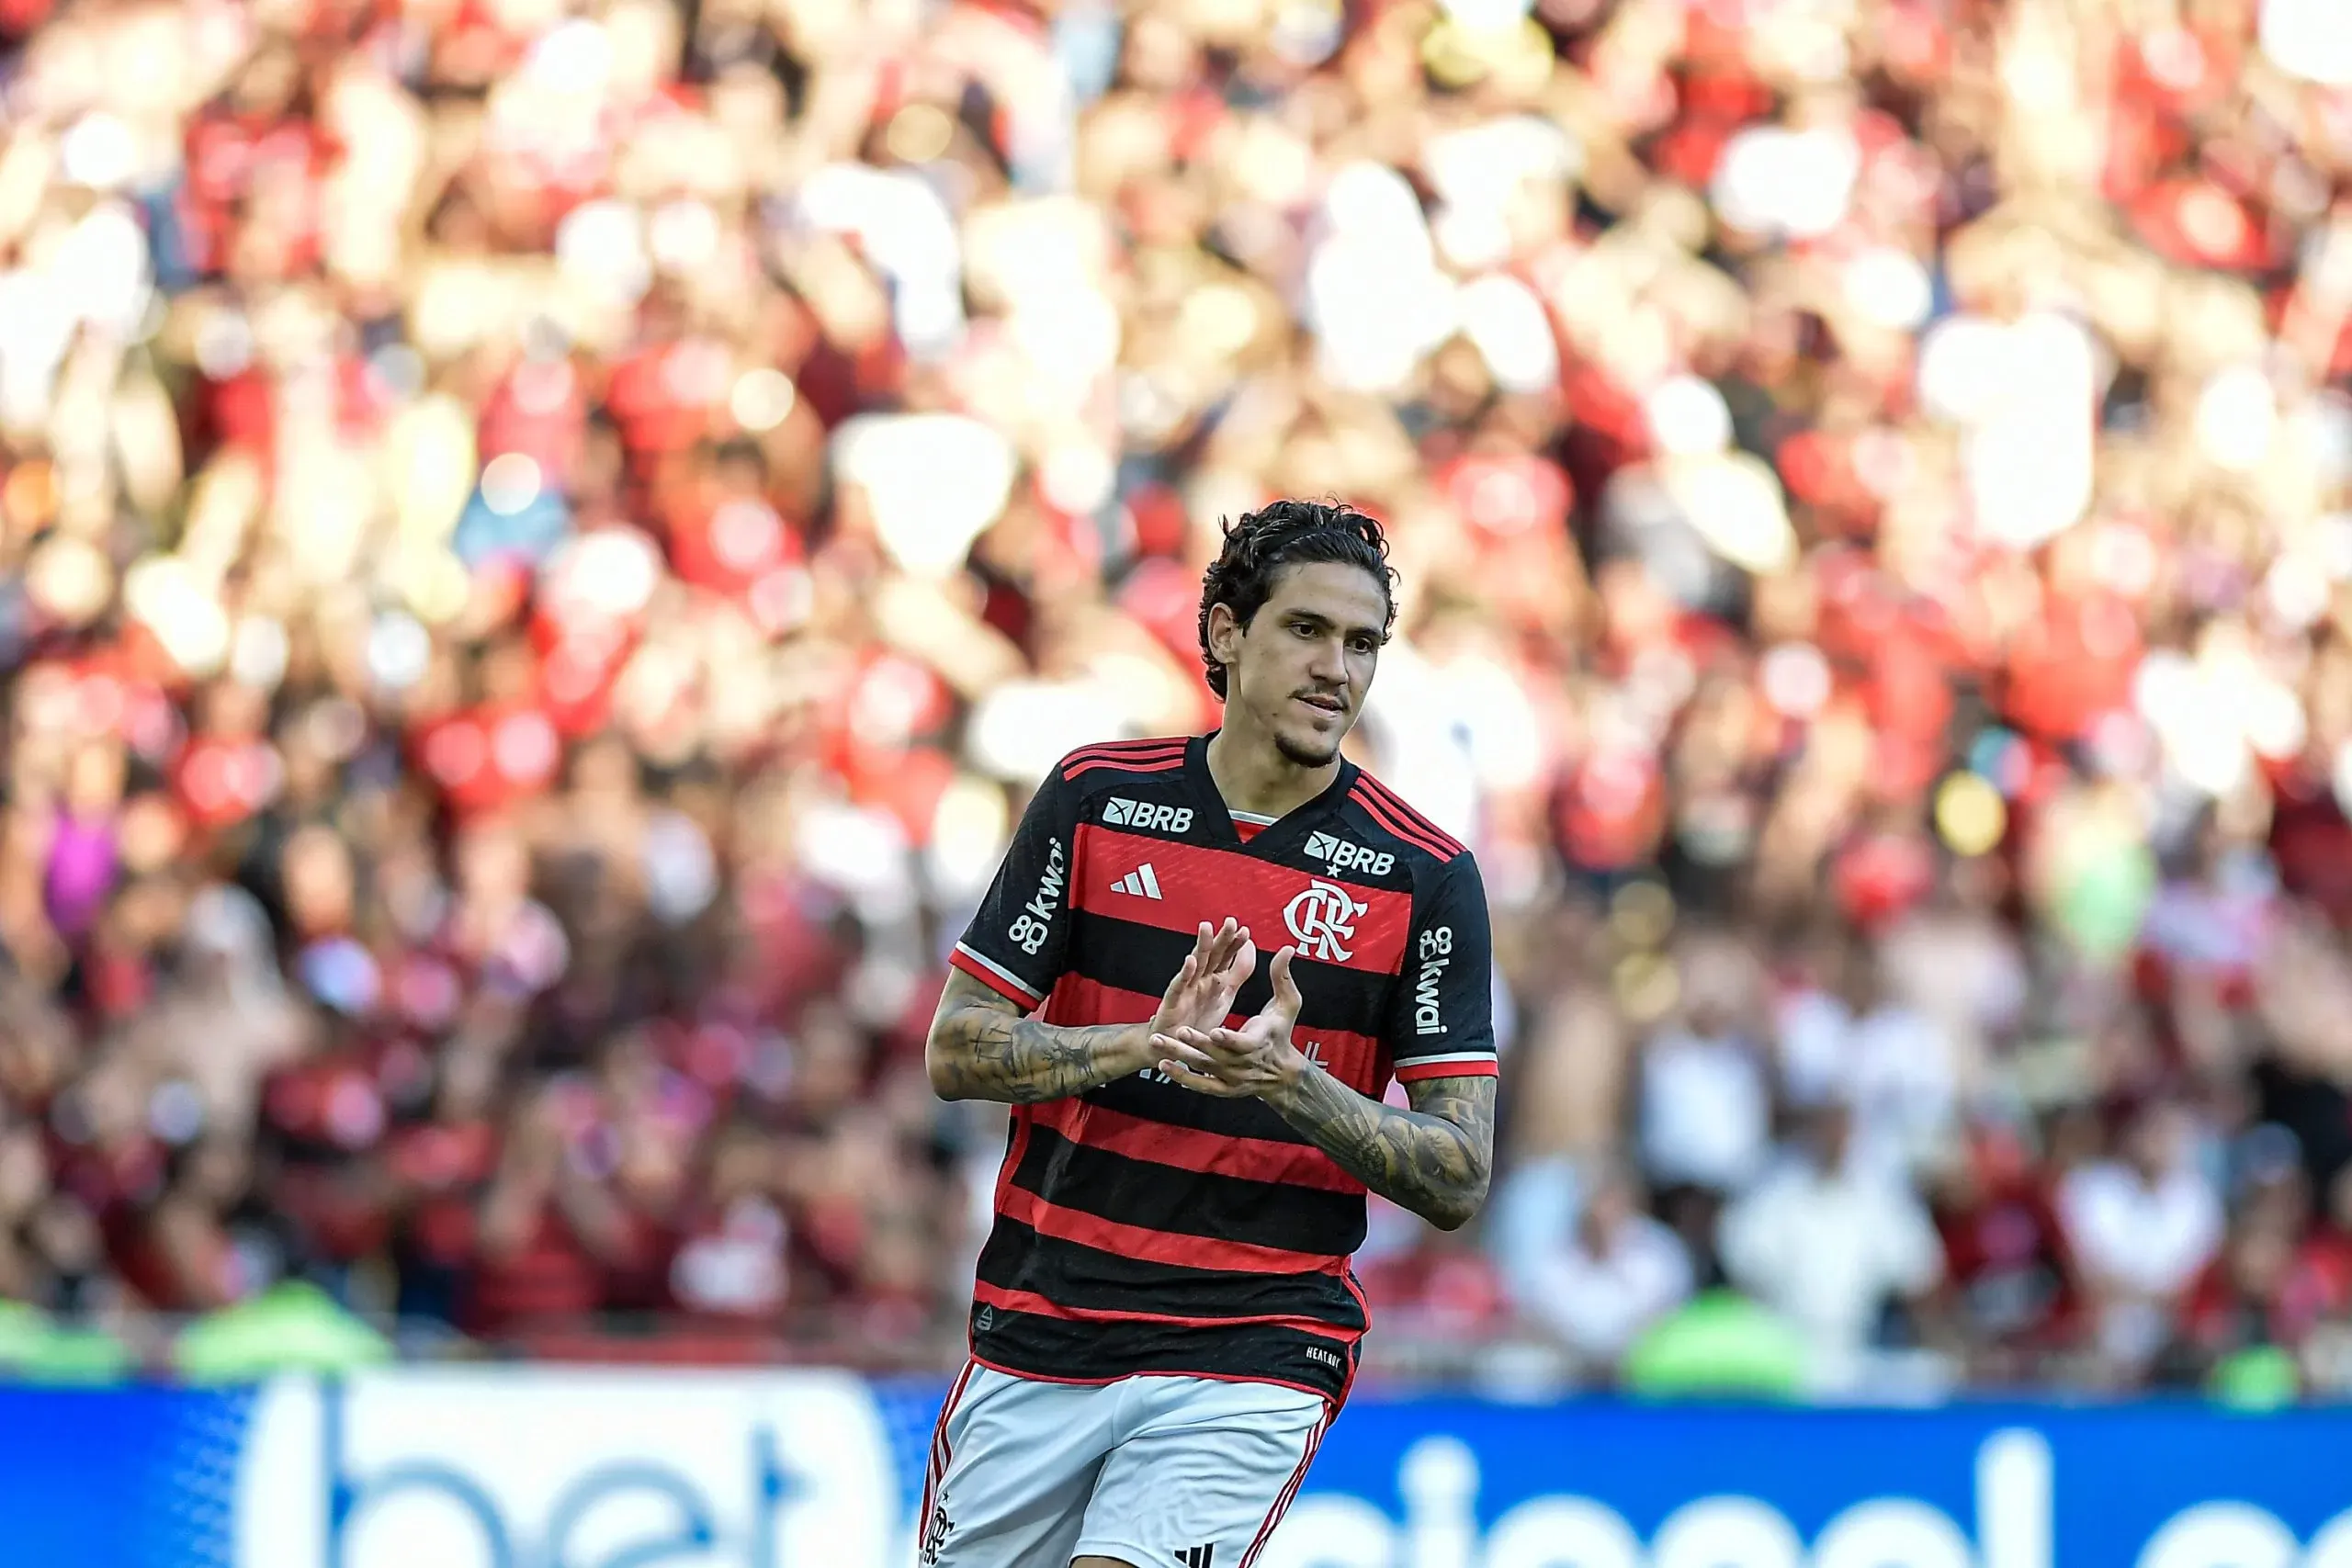 Pedro comemora gol no Campeonato Carioca contra o Madureira. Foto: Thiago Ribeiro/AGIF